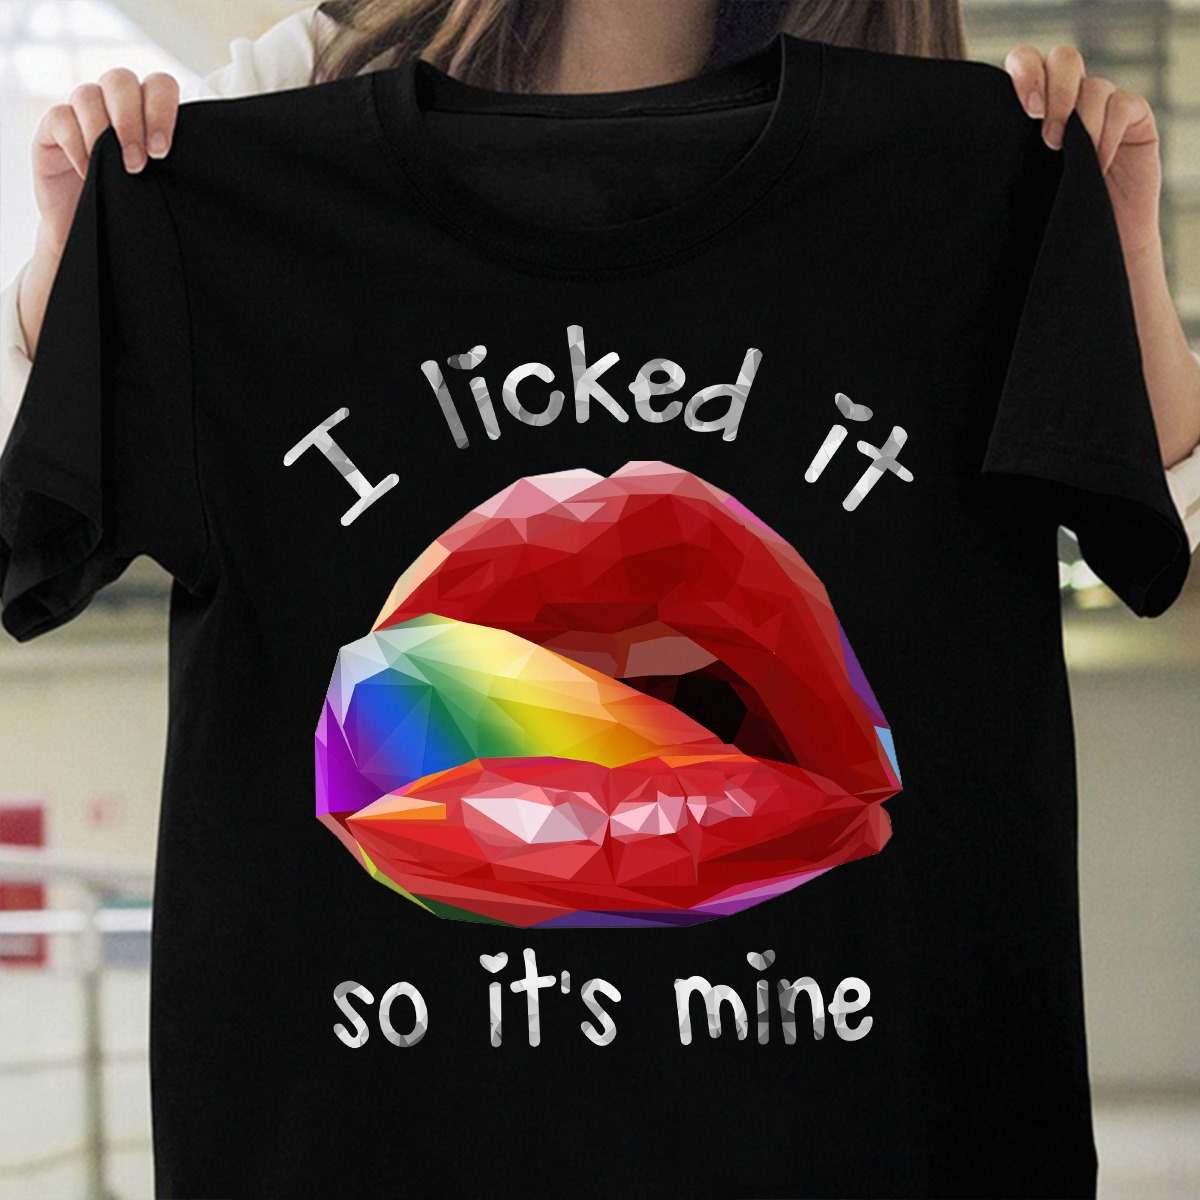 I licked it so it's mine - Woman lip, lgbt community